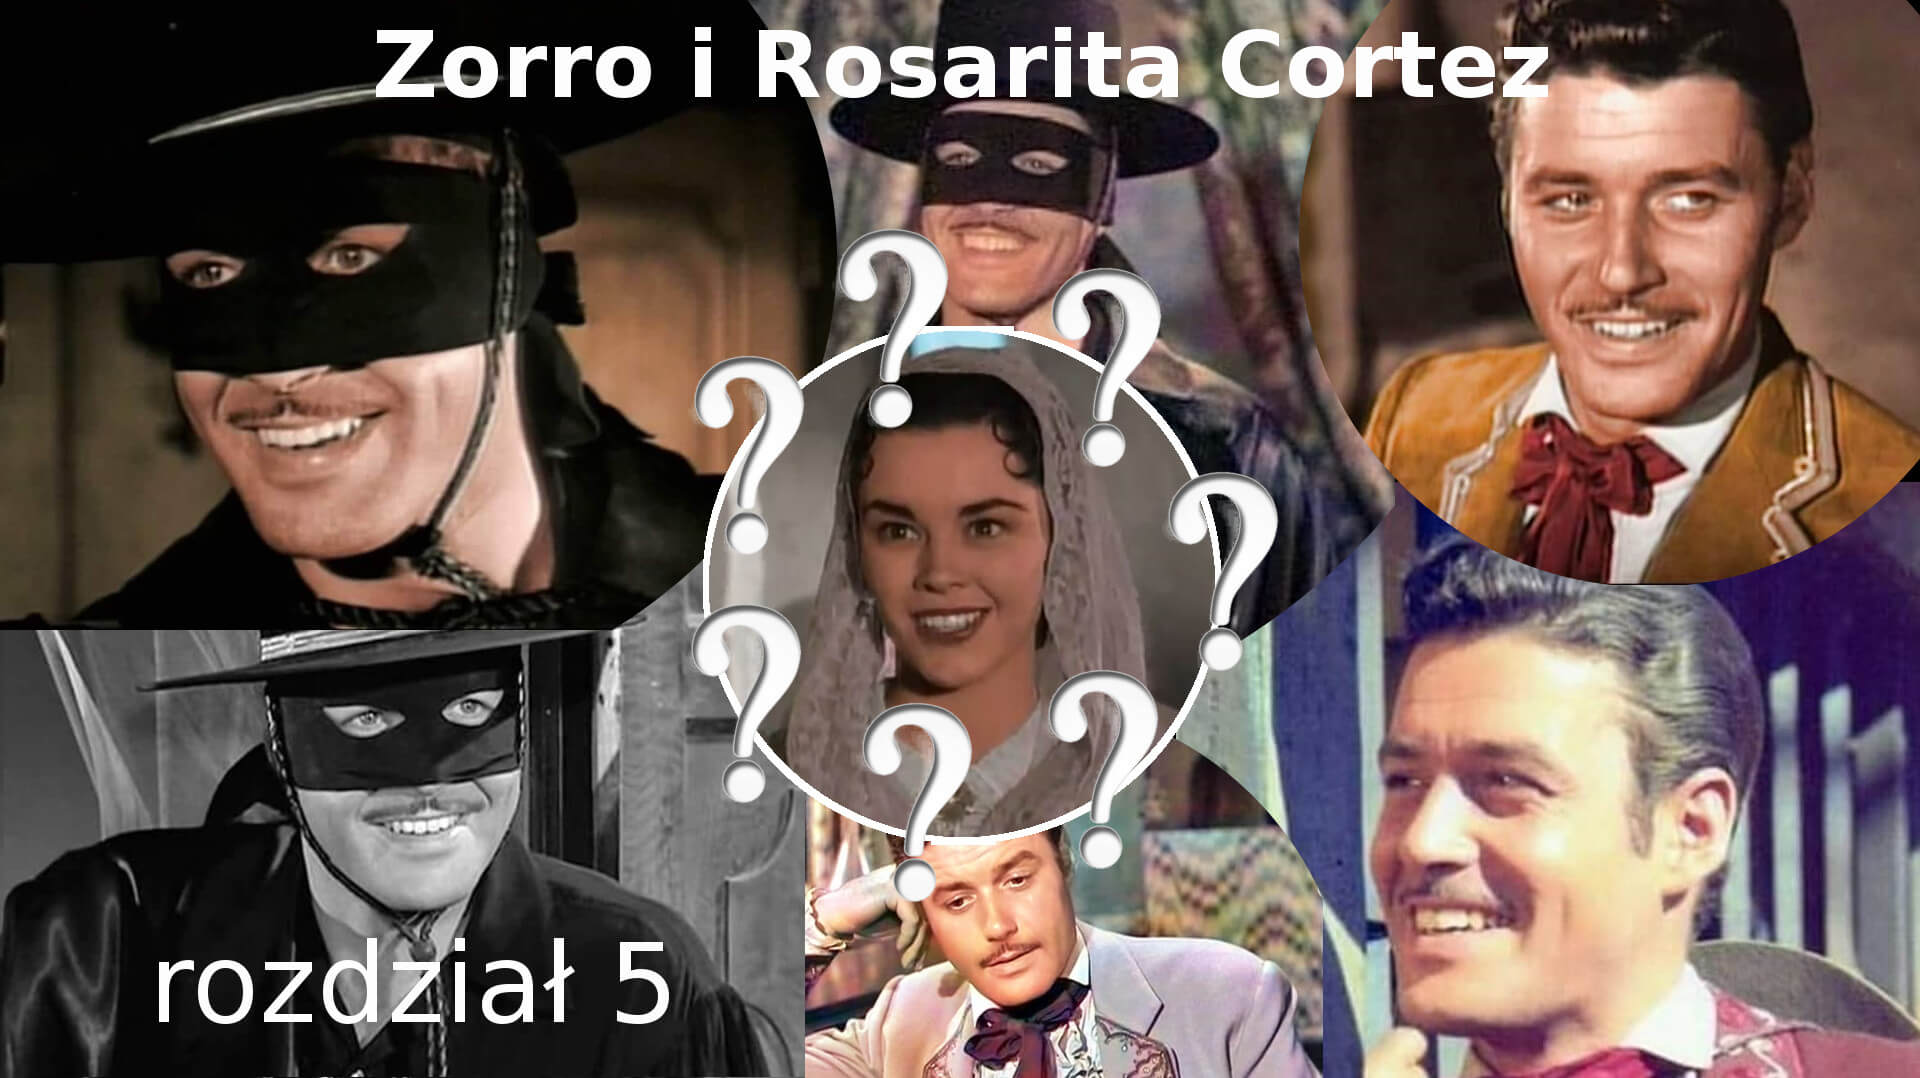 Zorro i Rosarita Cortez rozdział 5 Zorro fanfiction